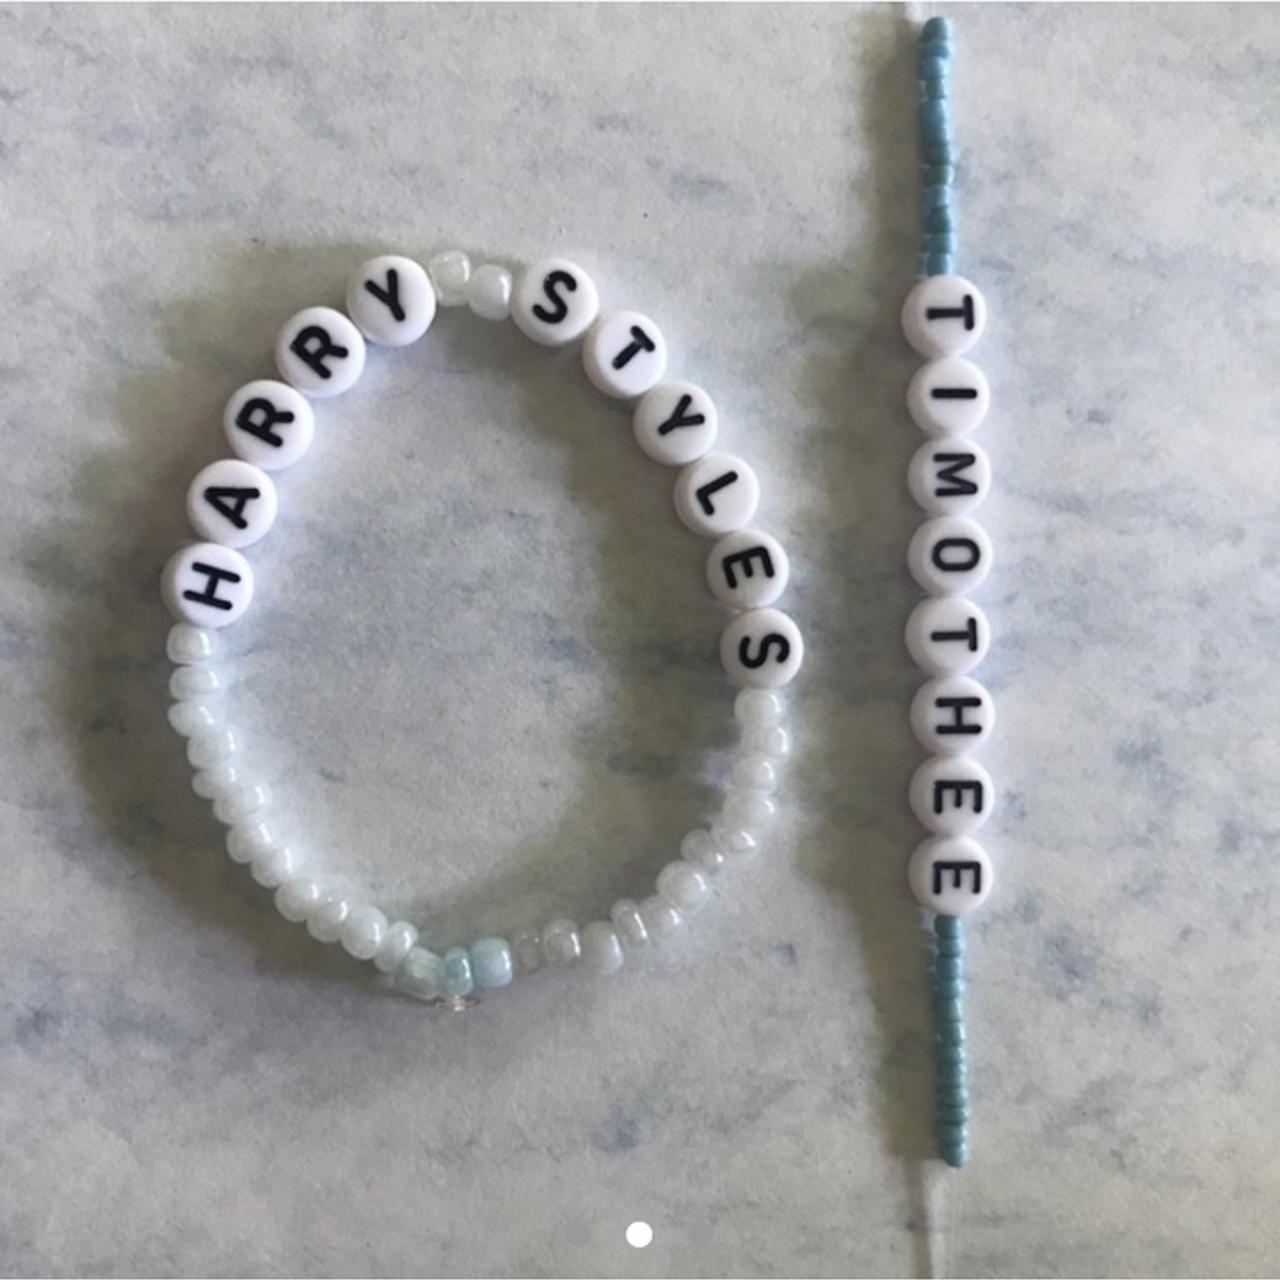 Timothée Chalamet inspired adjustable bracelet set - Depop